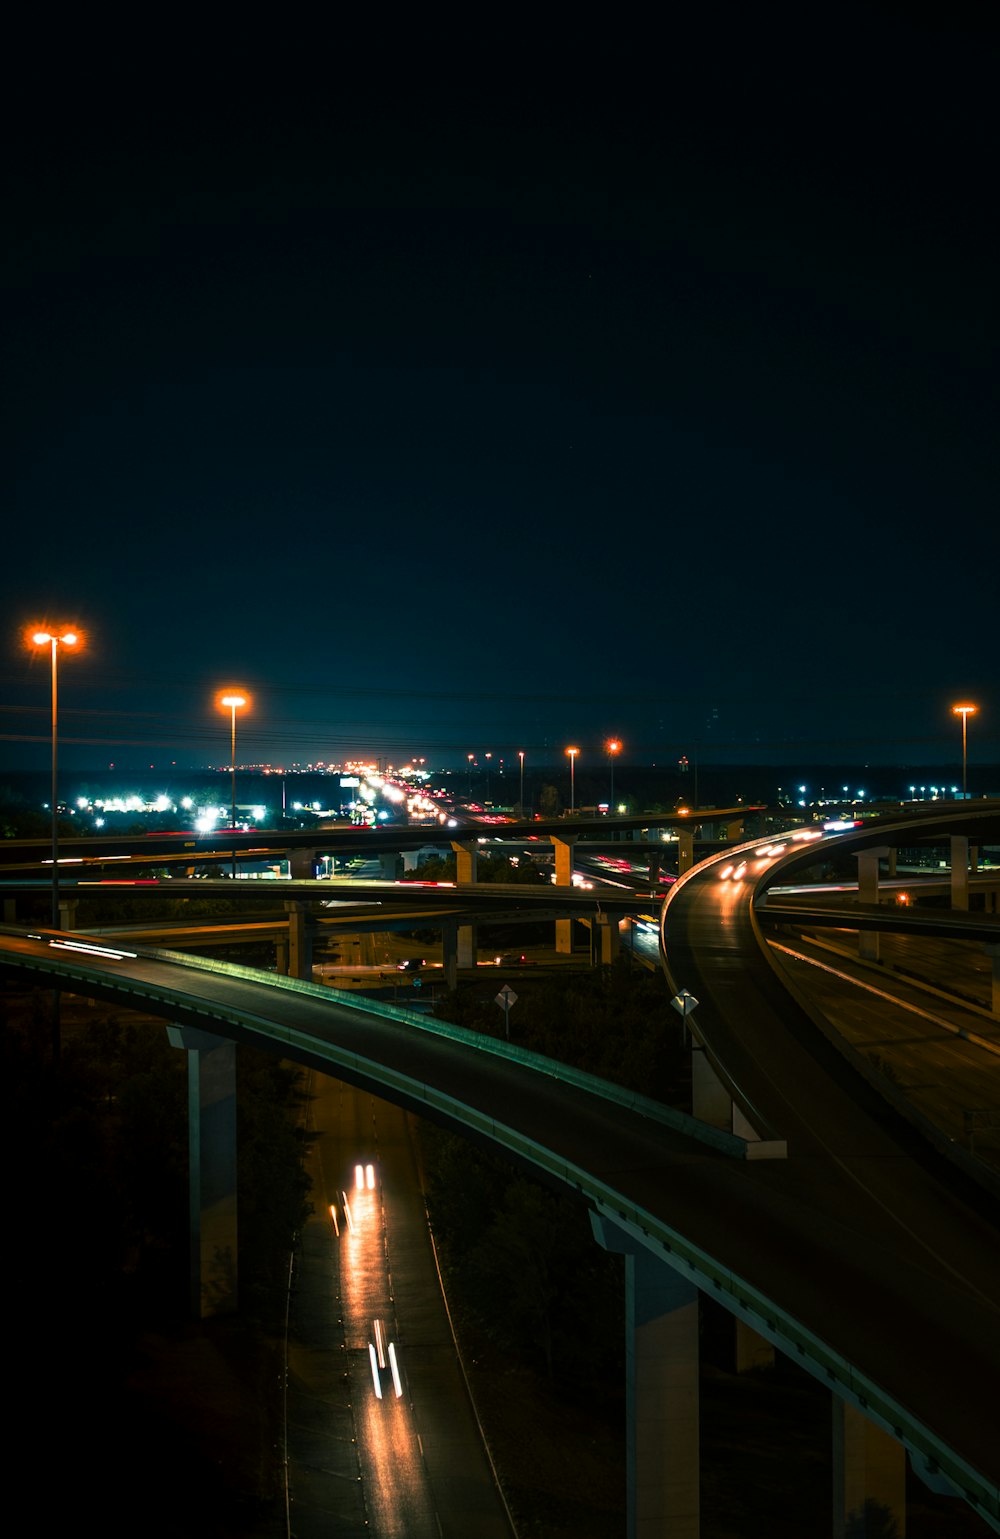 불빛이 가득한 밤의 고속도로